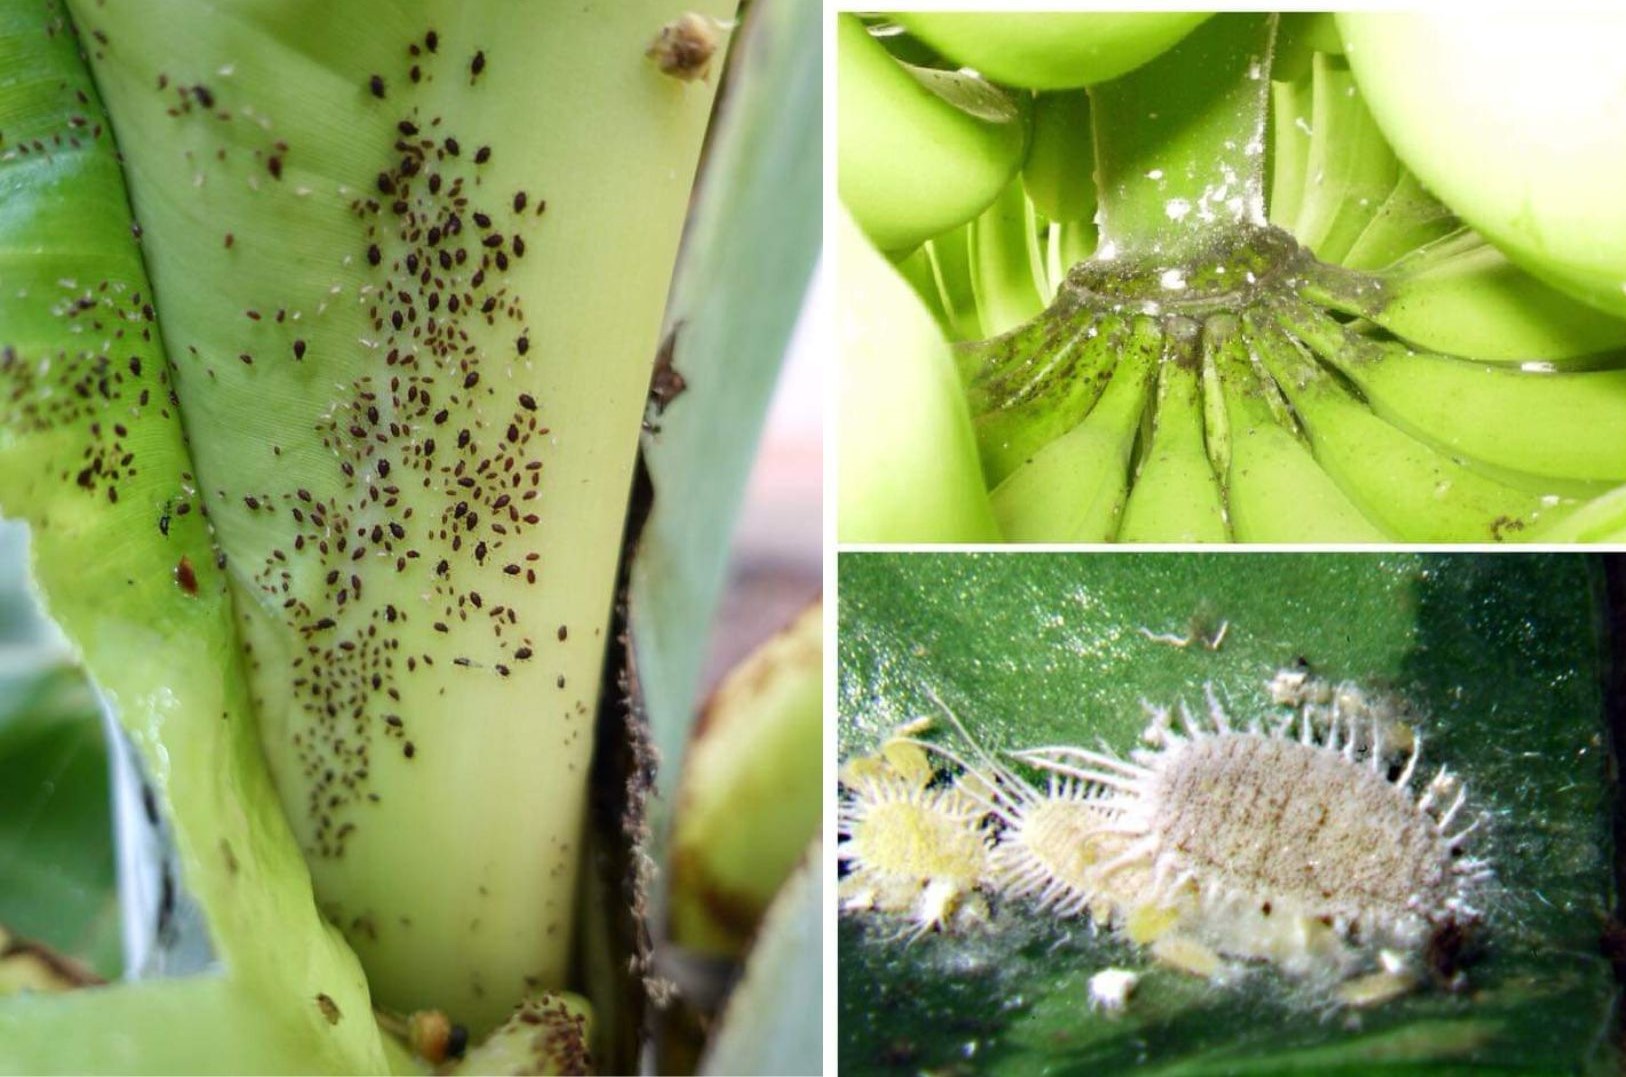 Common Pests of Banana Plants